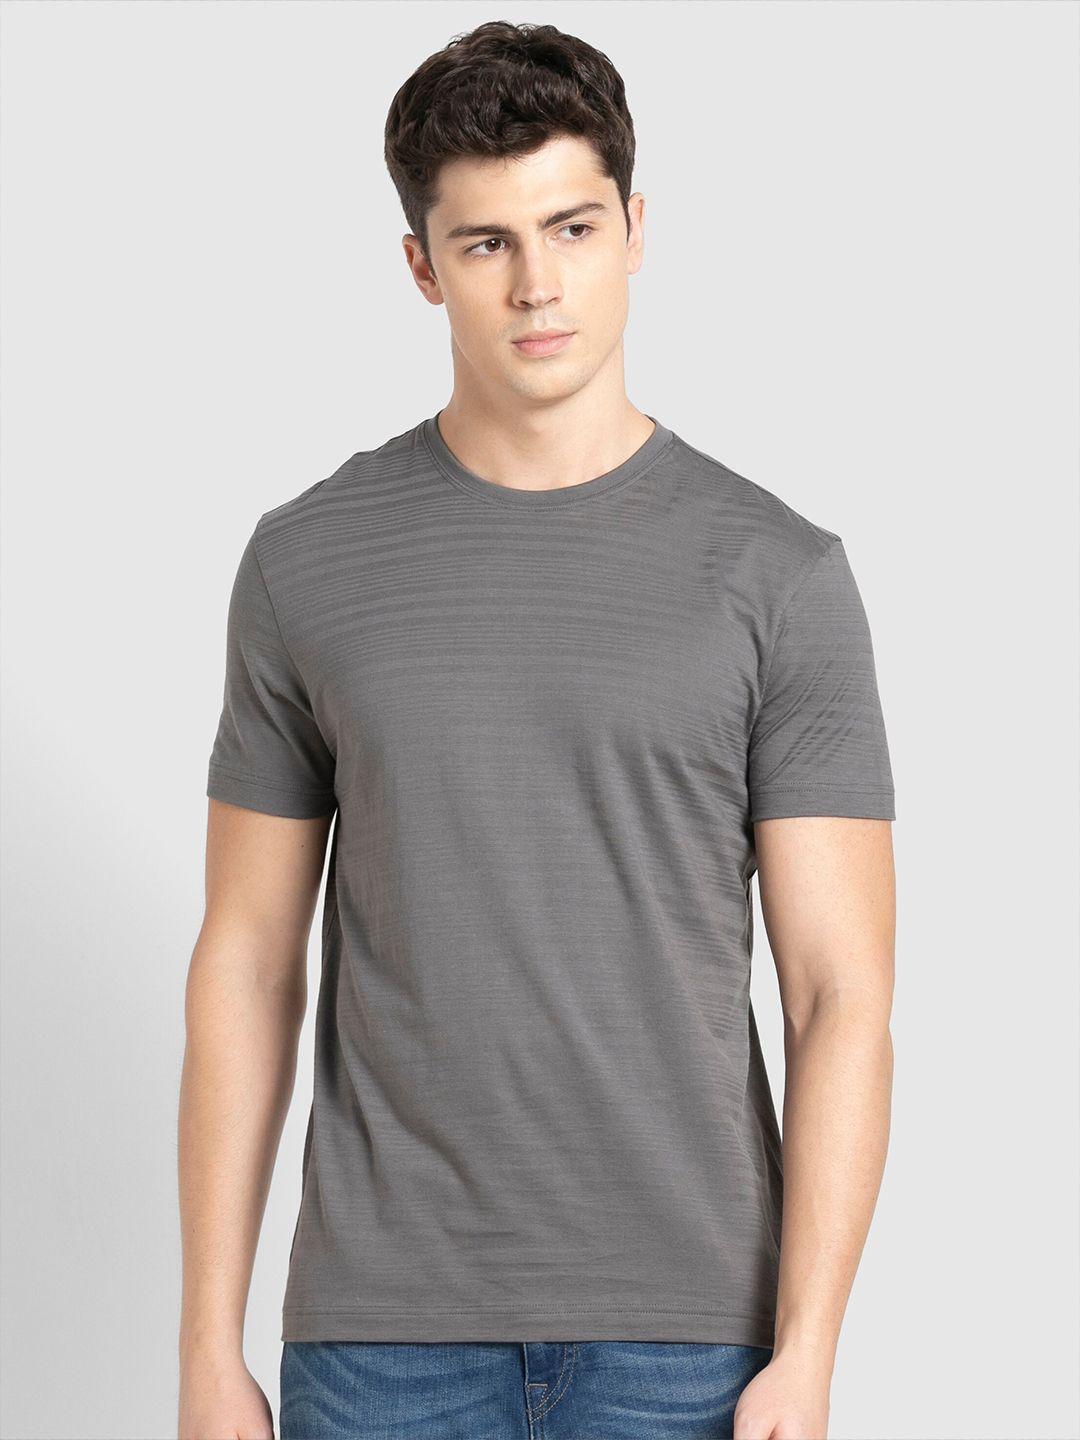 jockey-men-grey-self-striped-cotton-t-shirt